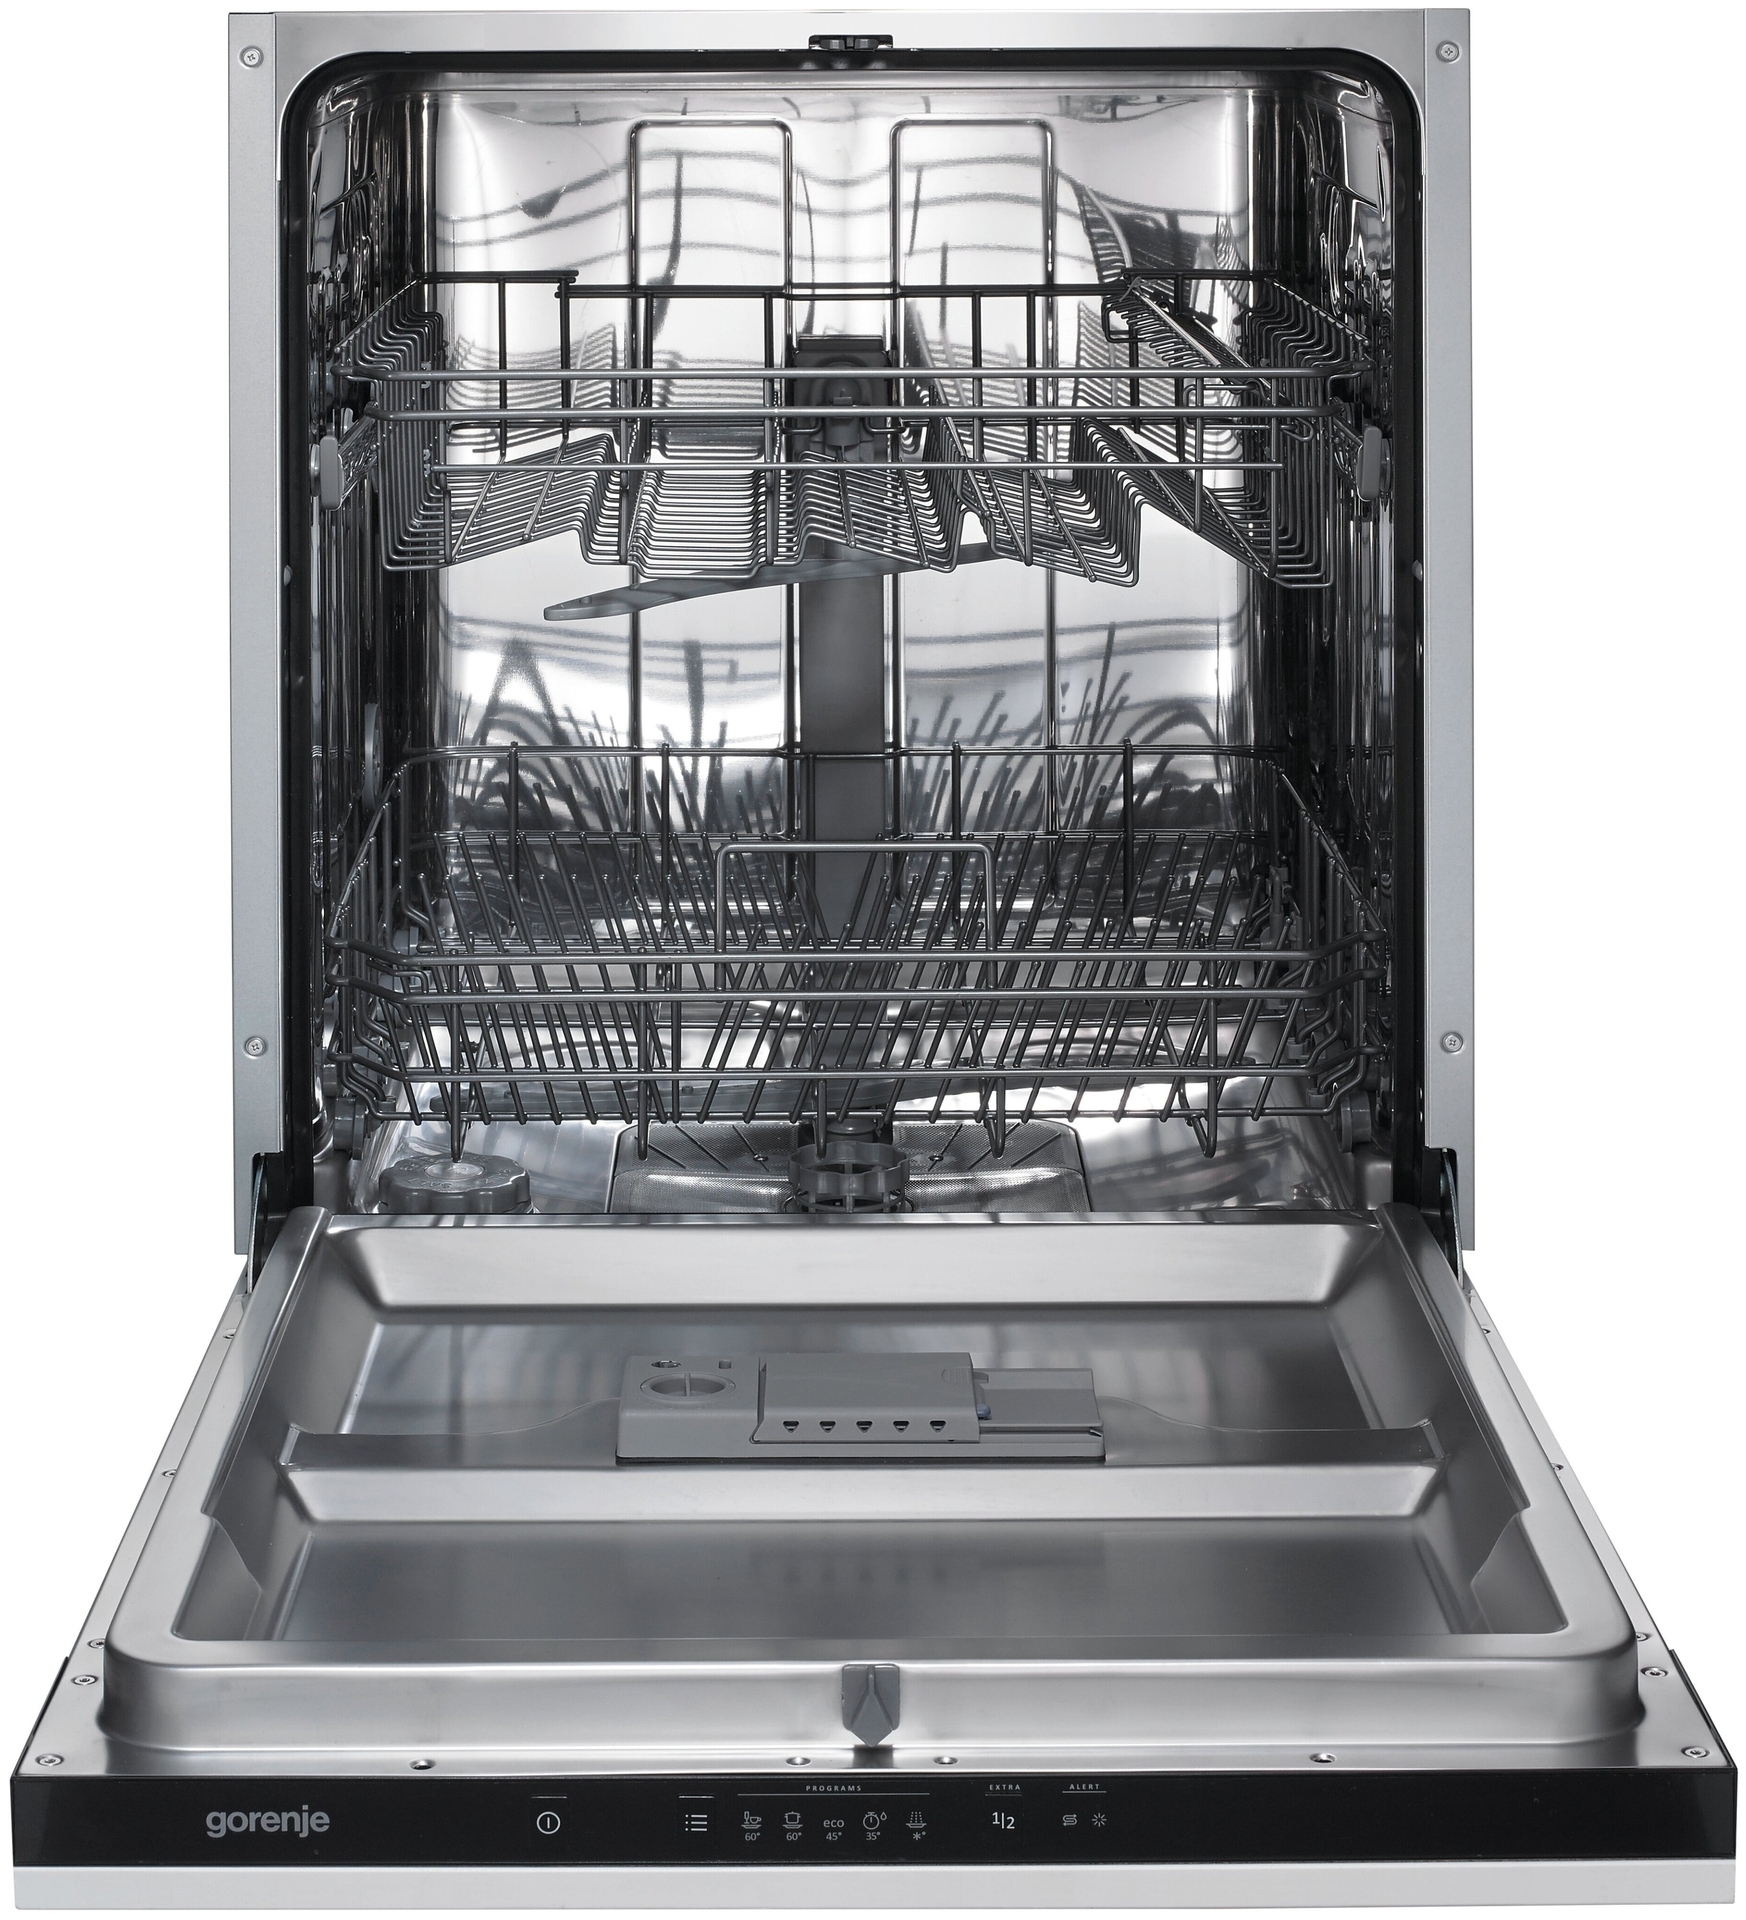 Посудомоечная машина gorenje gv663c61. Встраиваемая посудомоечная машина Gorenje gv62010. Посудомоечная машина Gorenje gv62011. Посудомоечная машина Gorenje gv62010. Посудомоечная машина Gorenje gv62012.